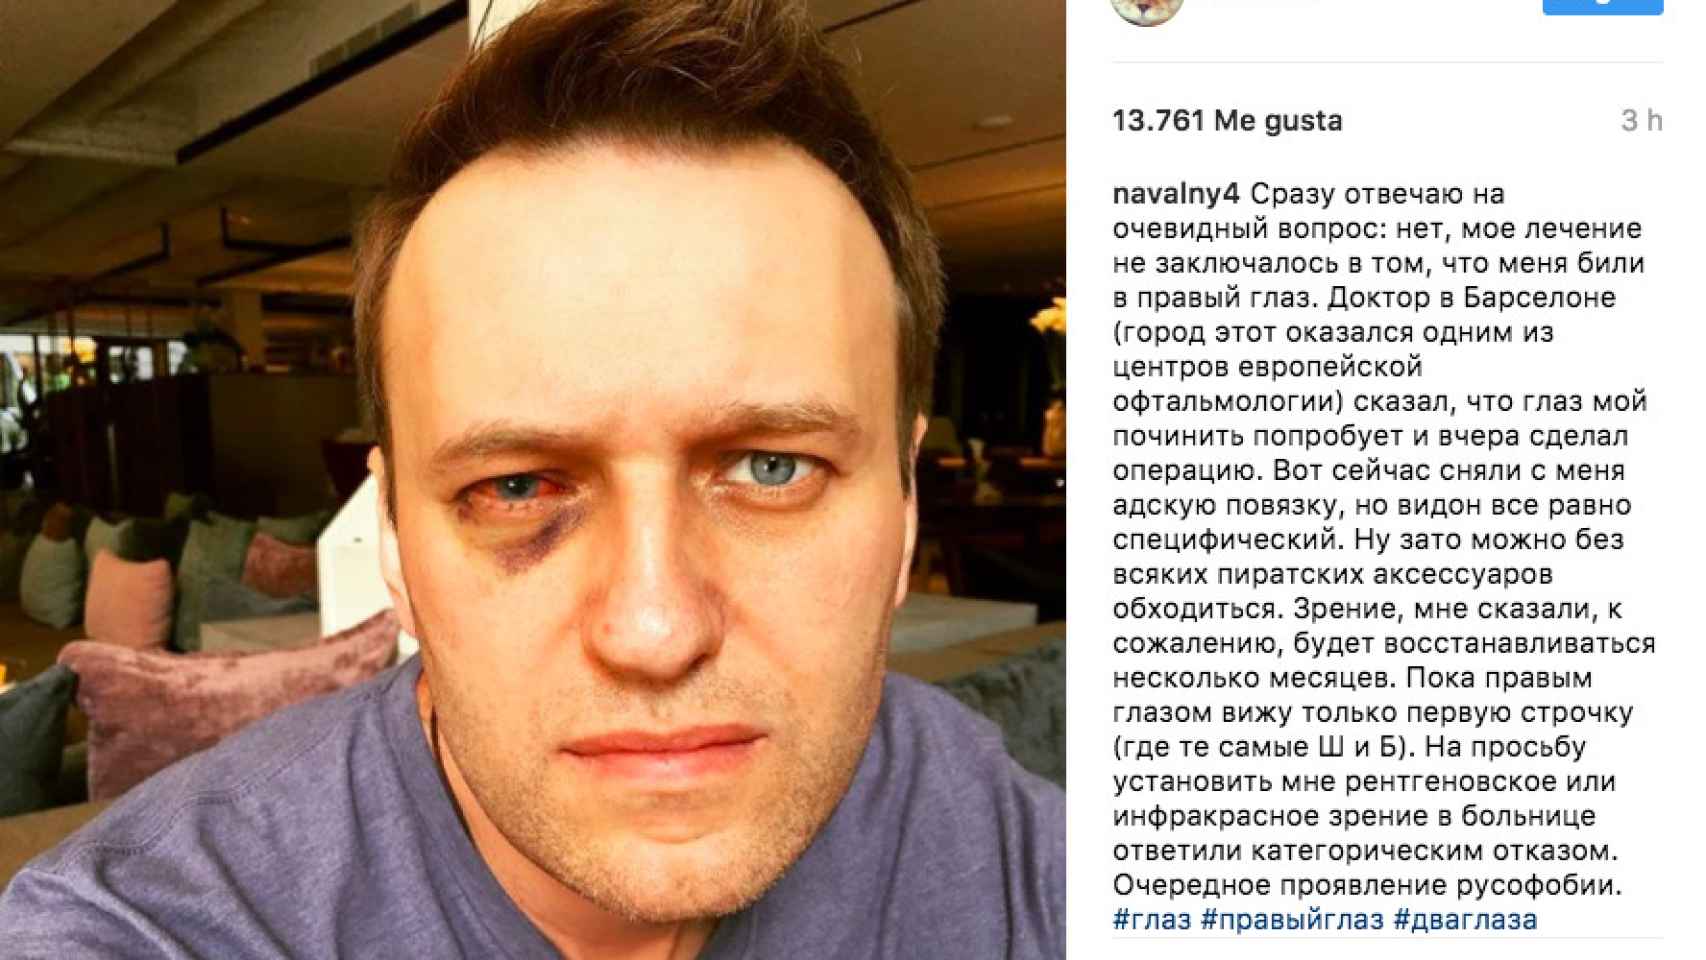 La entrada de Instagram del líder opositor ruso Alexéi Navalni / INSTAGRAM